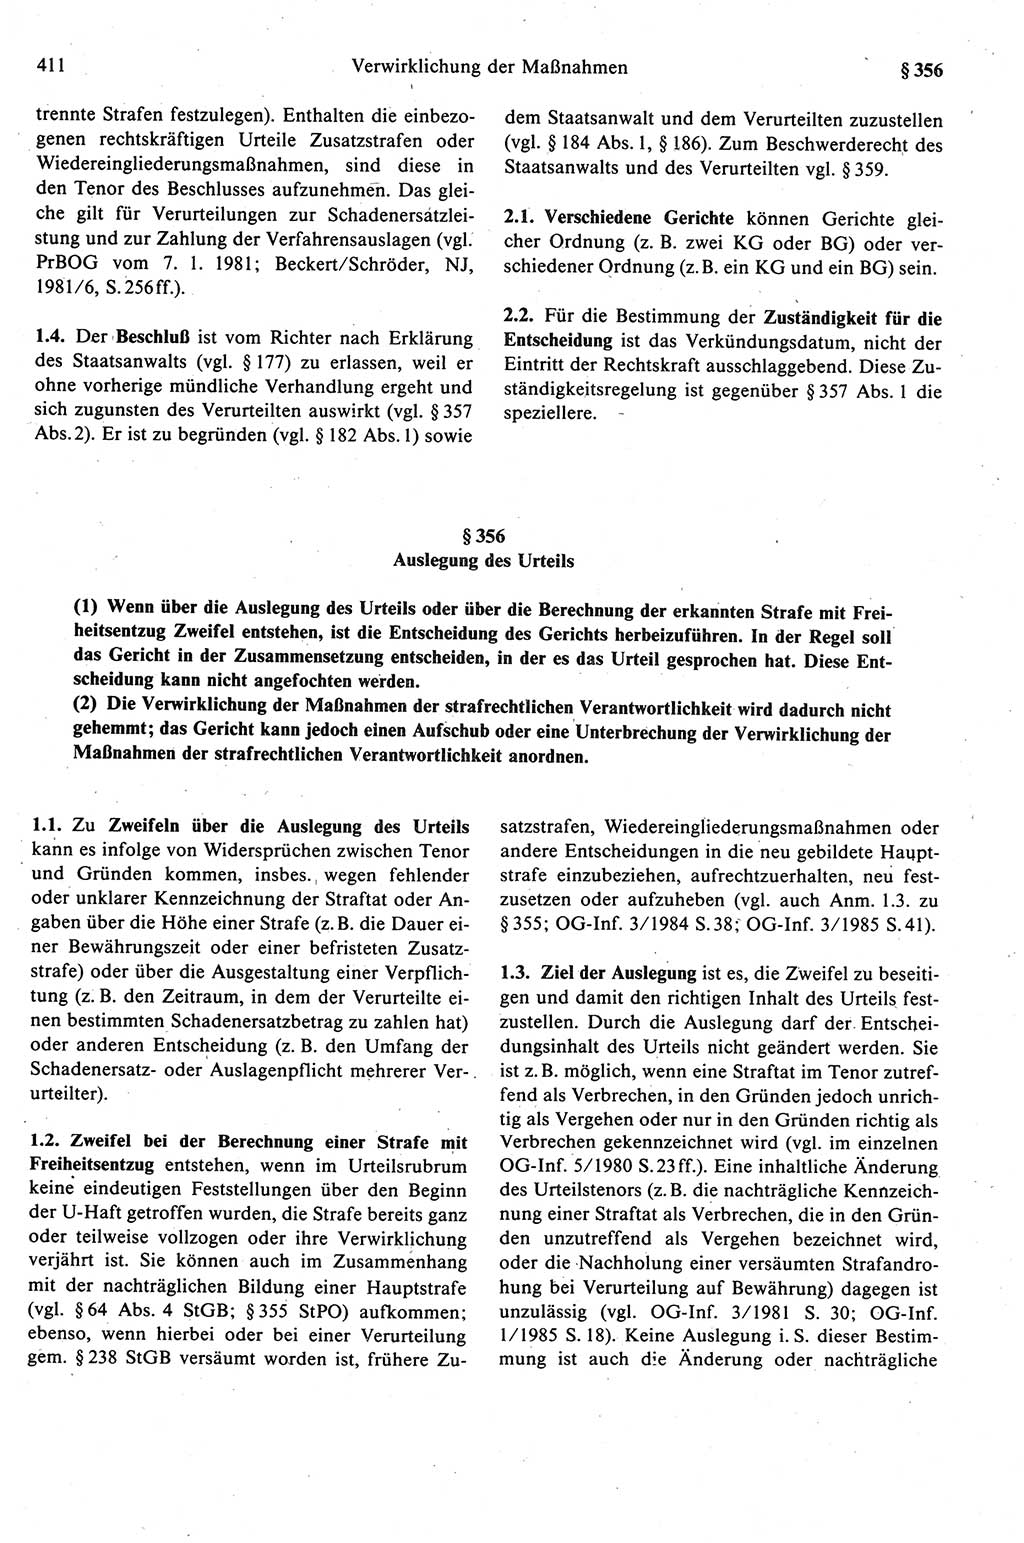 Strafprozeßrecht der DDR (Deutsche Demokratische Republik), Kommentar zur Strafprozeßordnung (StPO) 1989, Seite 411 (Strafprozeßr. DDR Komm. StPO 1989, S. 411)